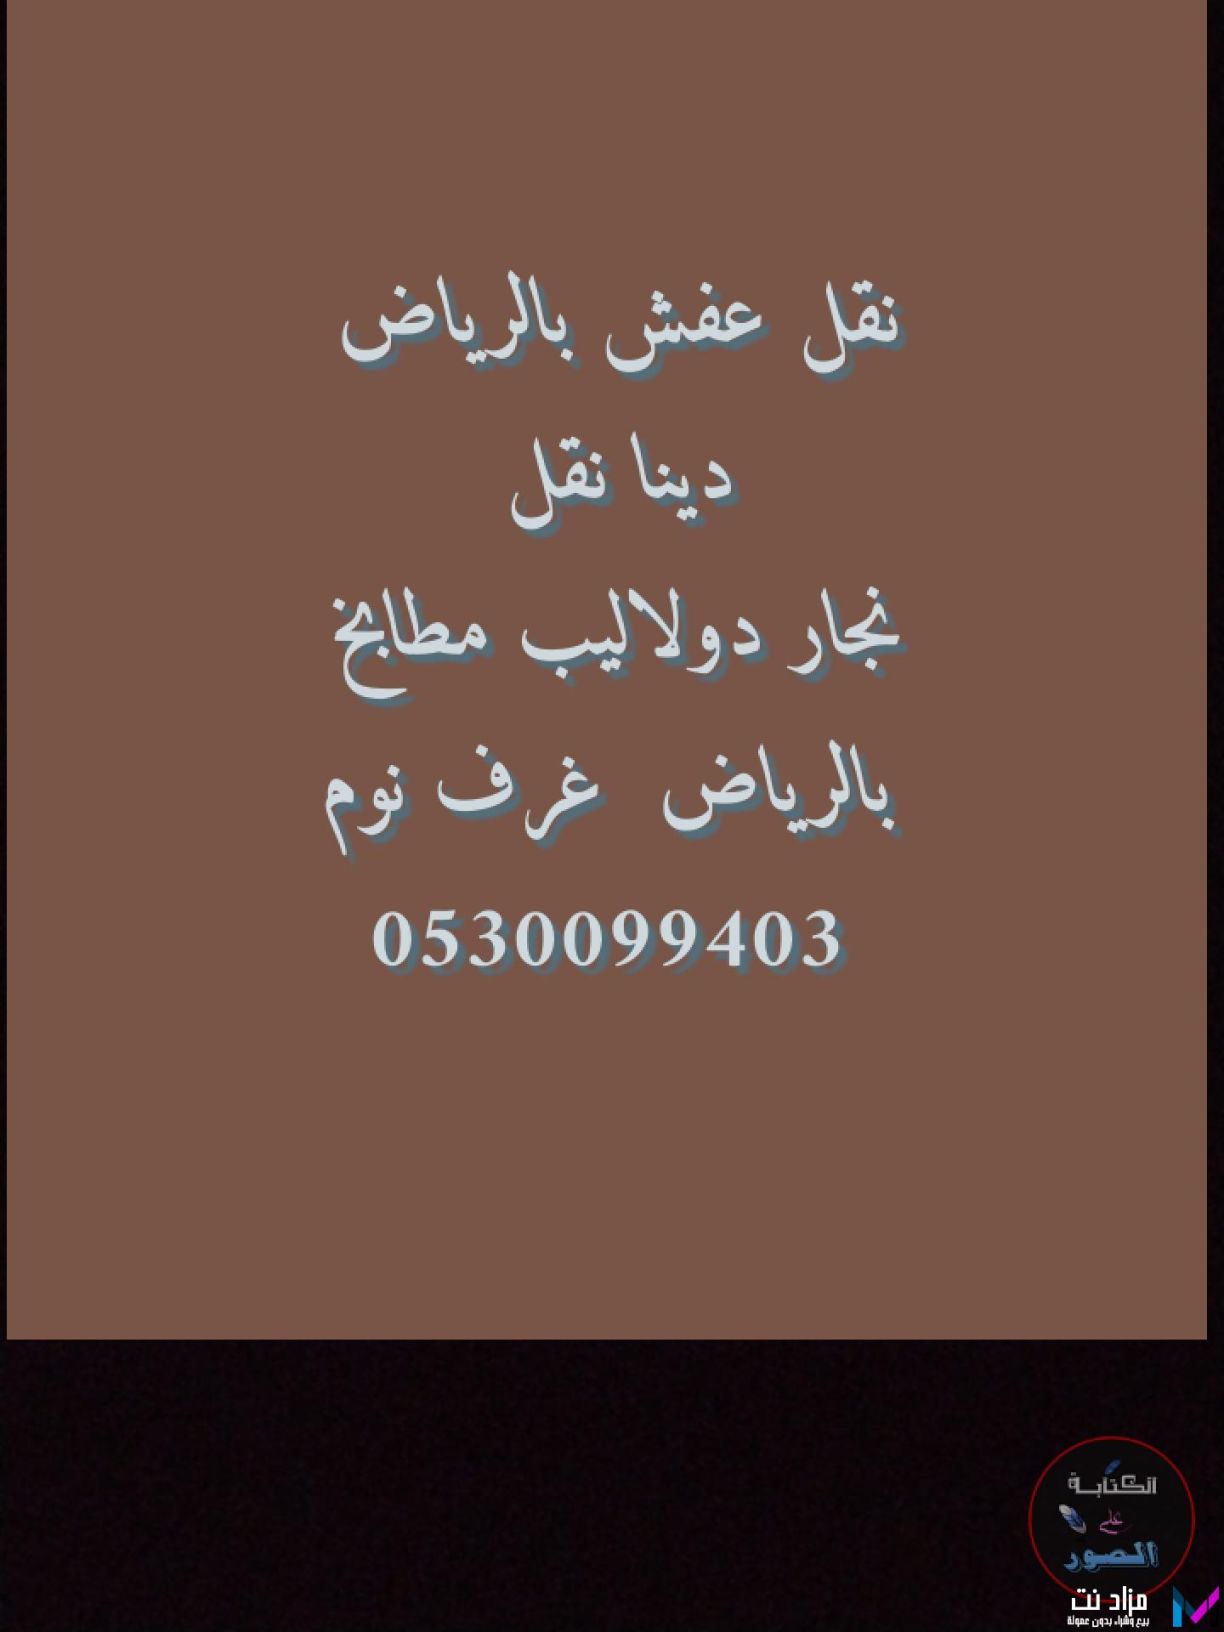 ابو حسن نقل عفش حي الدار البيضاء 05300994003